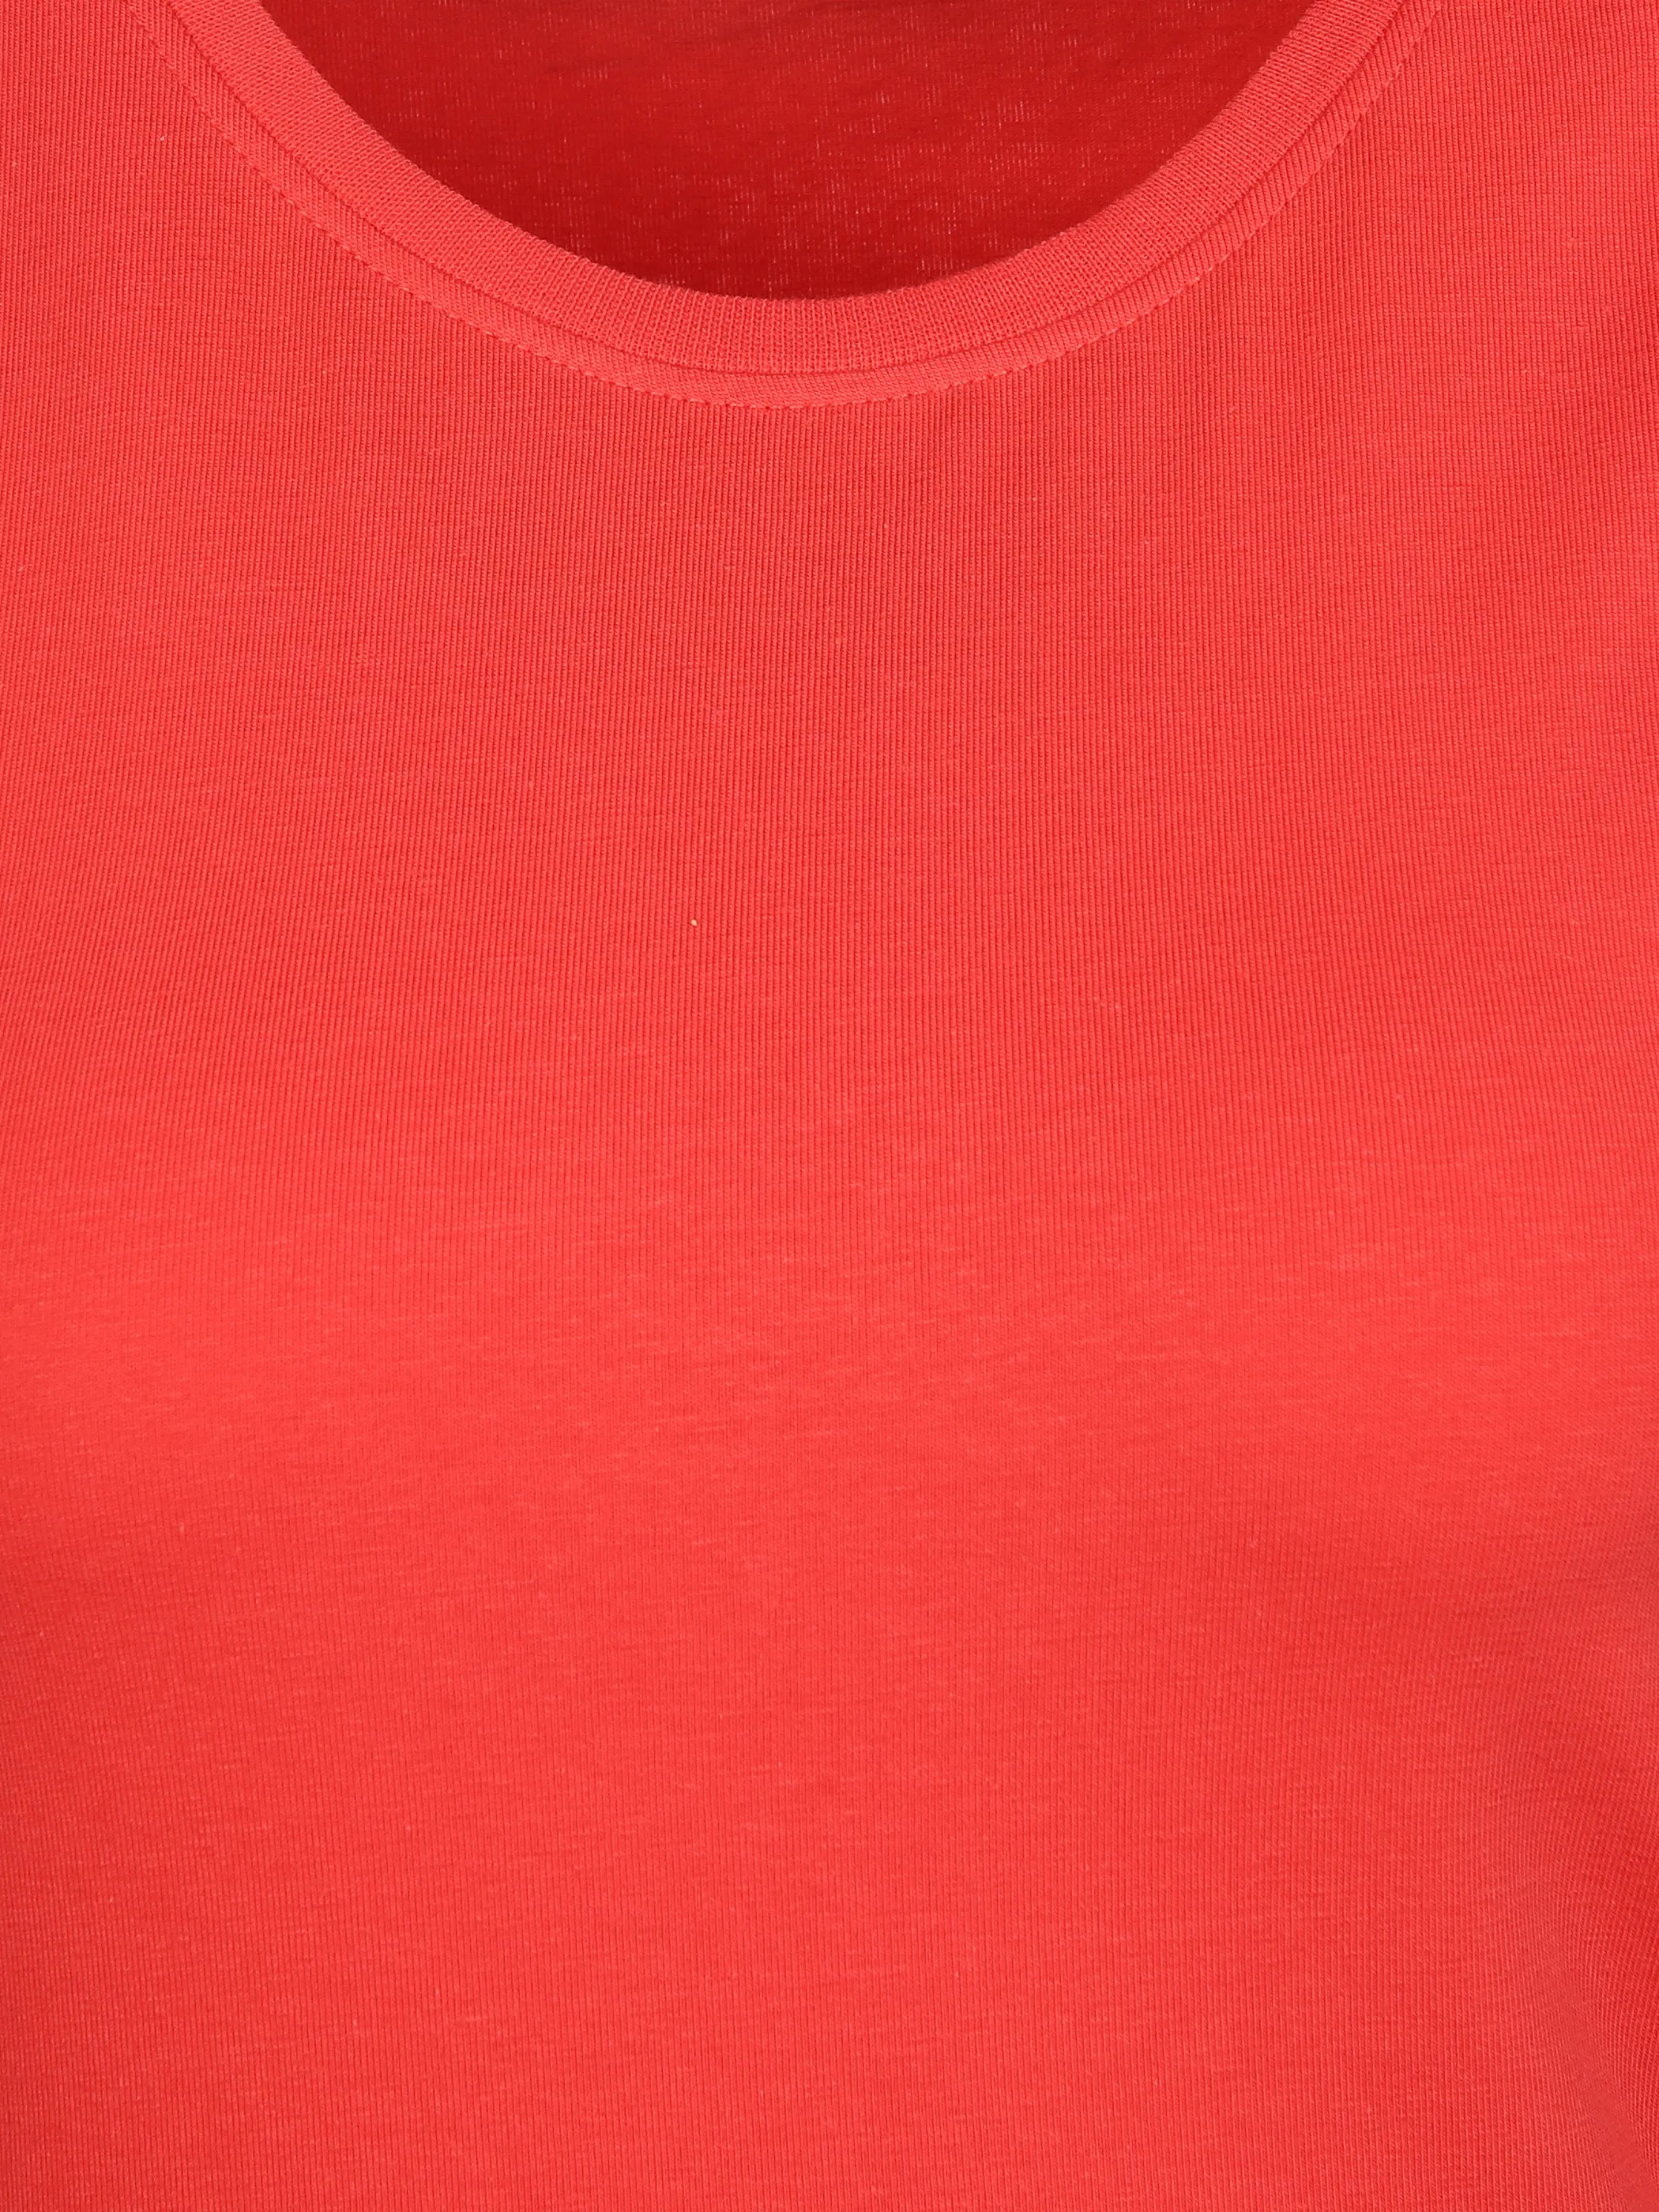 IX-O YF-Da T-Shirt Basic Rot 890072 18-1651TCX 3